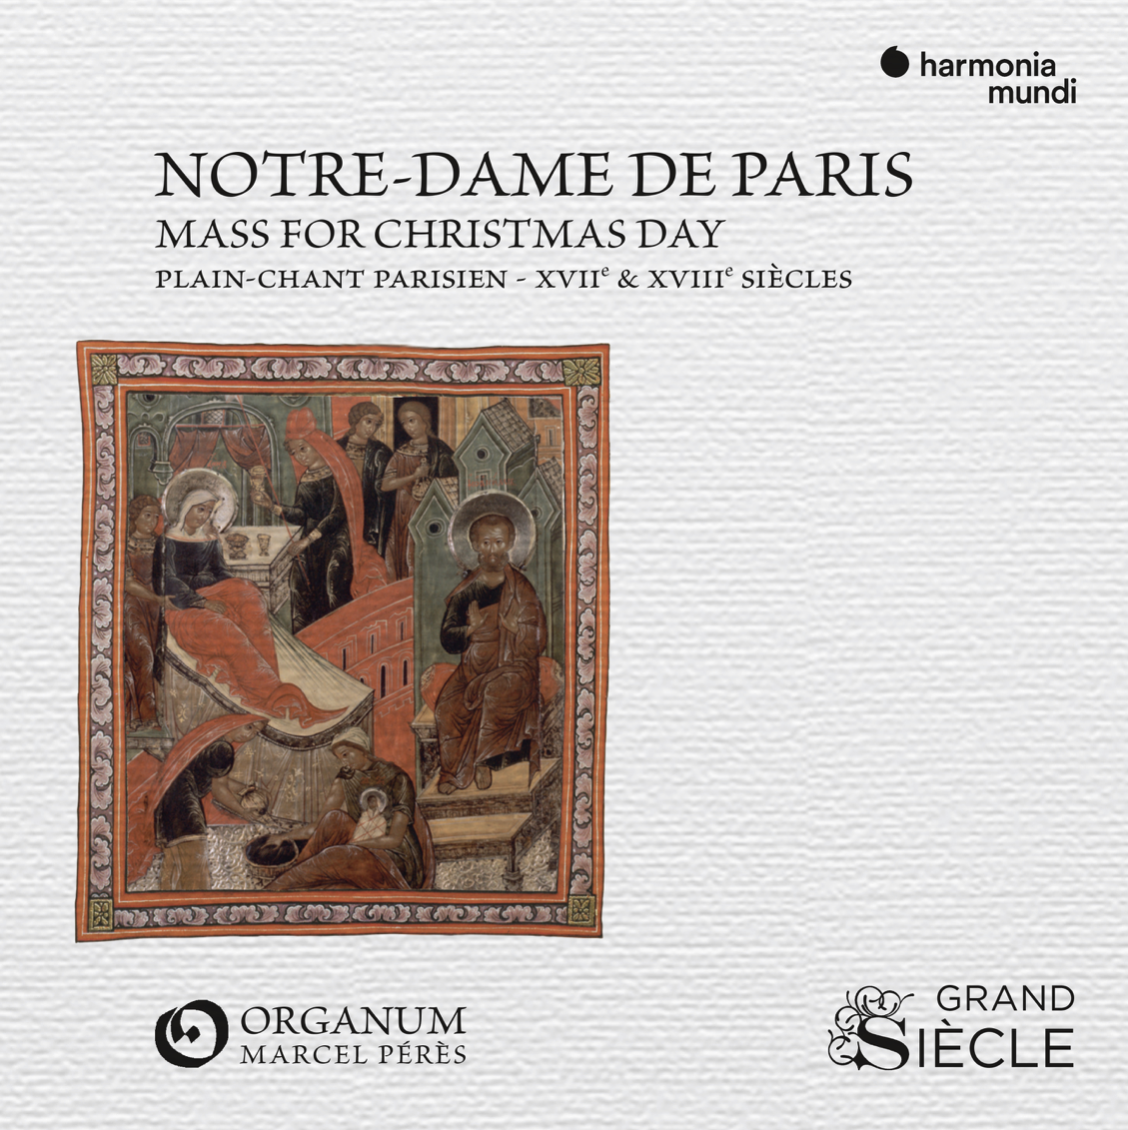 MASS FOR CHRISTMAS DAY Messe du jour de Noël Plain-chant parisien - XVIIe & XVIIIe siècle Improvisations à l'orgue Clicquot de Houdan HMO 8901480